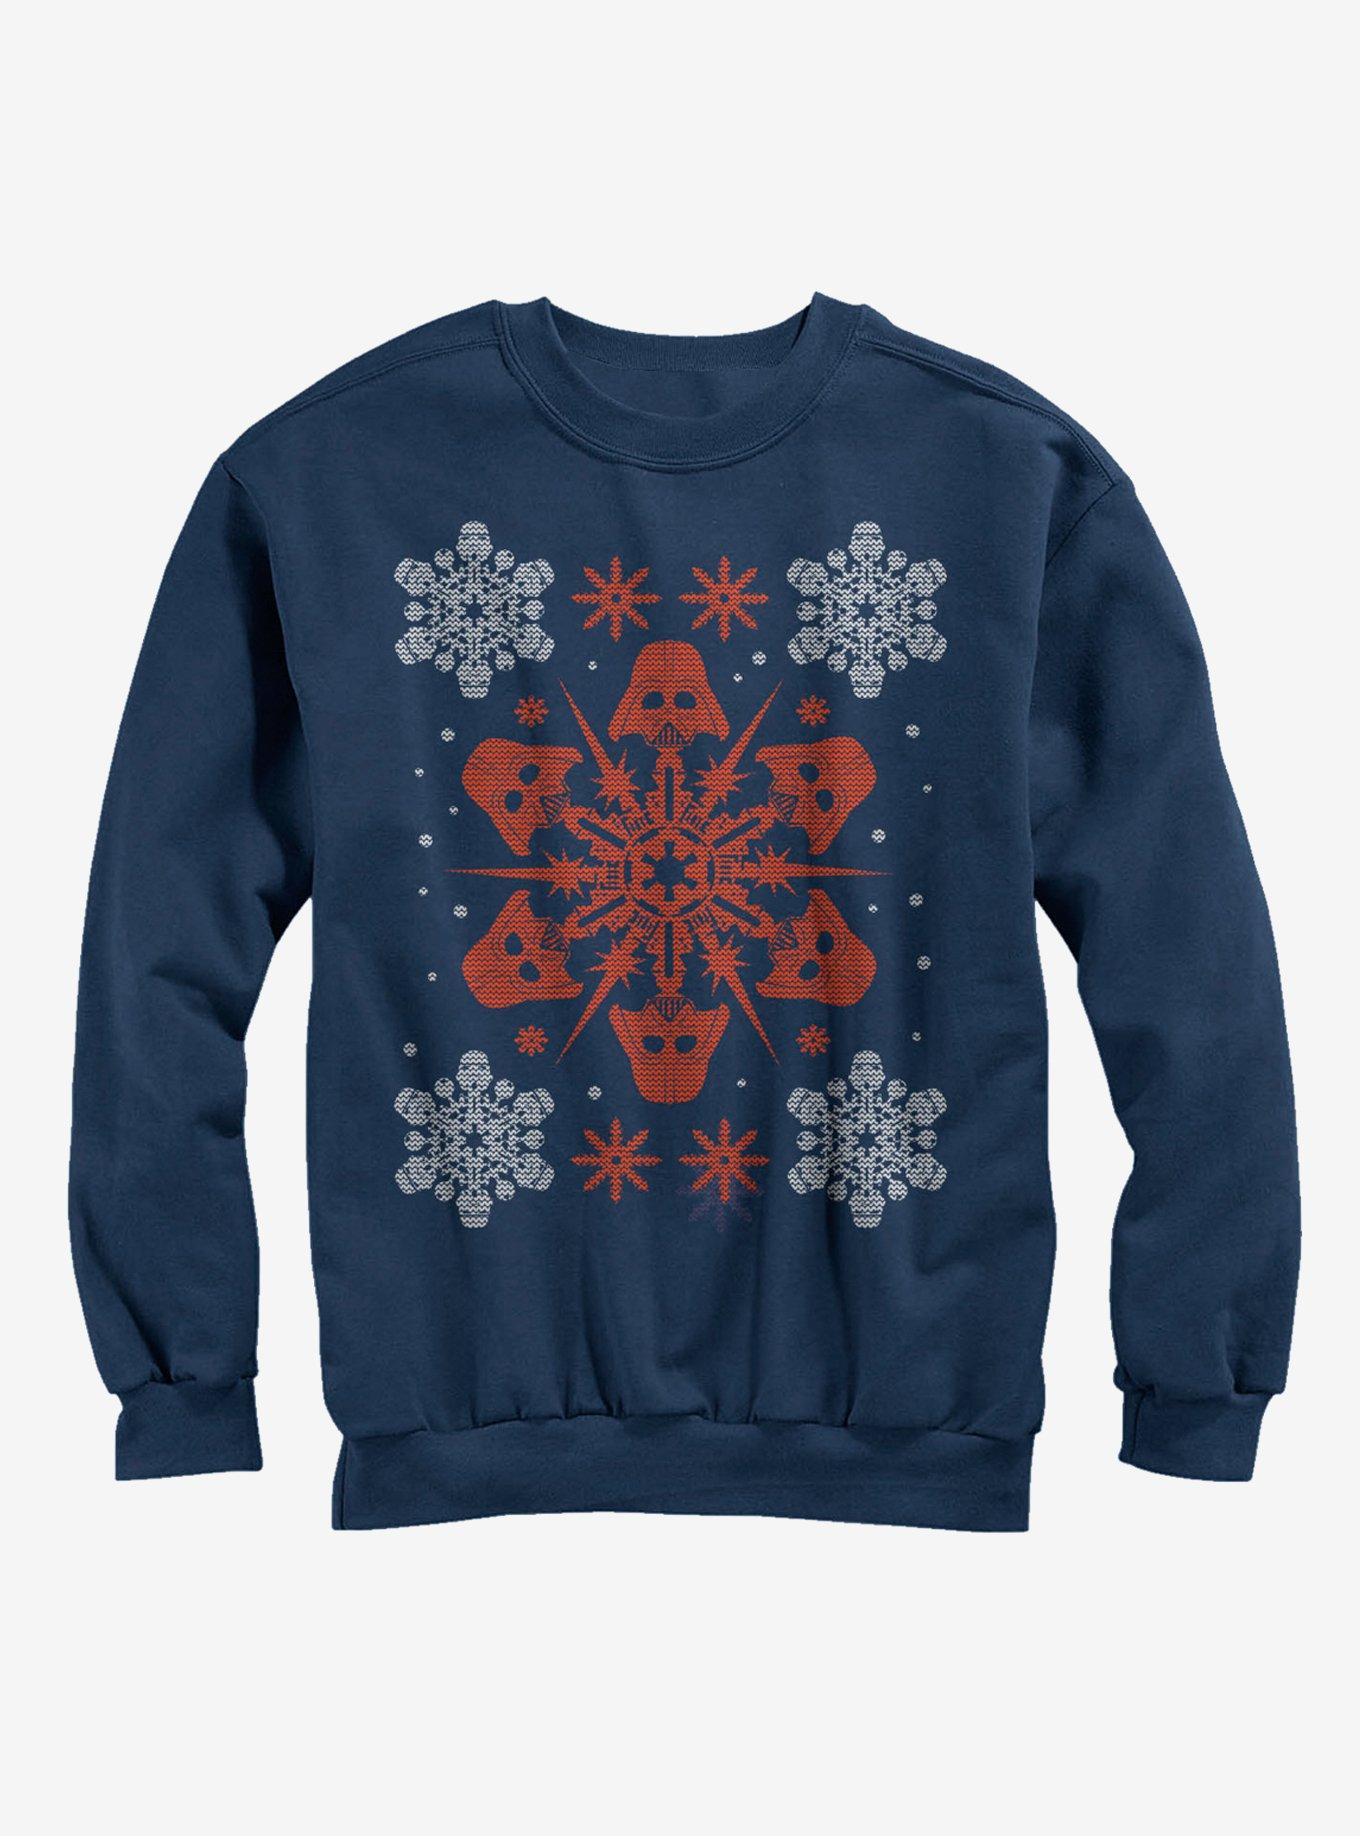 Star Wars Christmas Darth Vader Snowflake Sweatshirt, NAVY, hi-res